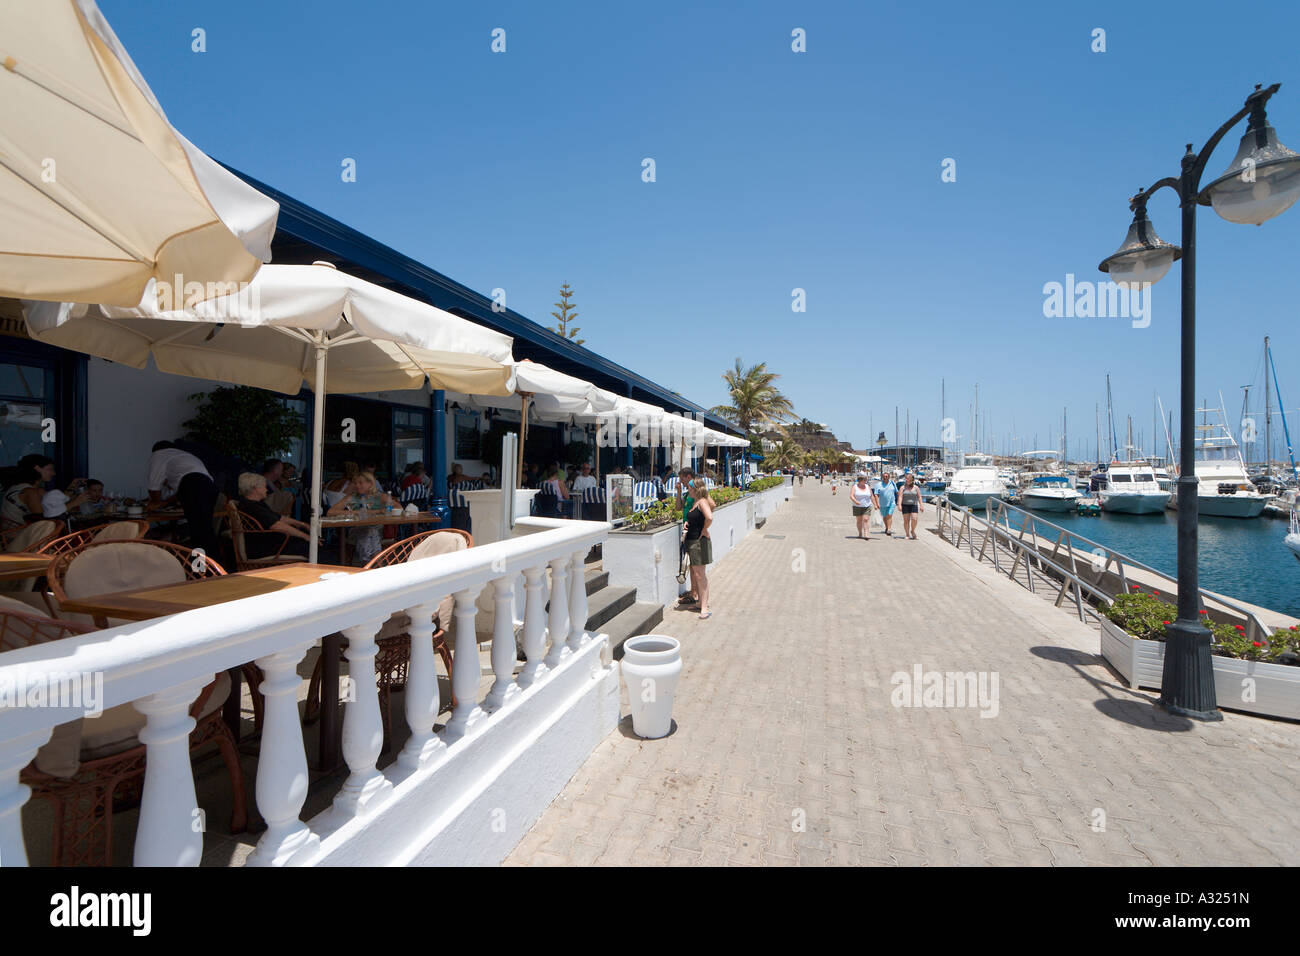 Puerto calero lanzarote fotografías e imágenes de alta resolución - Alamy